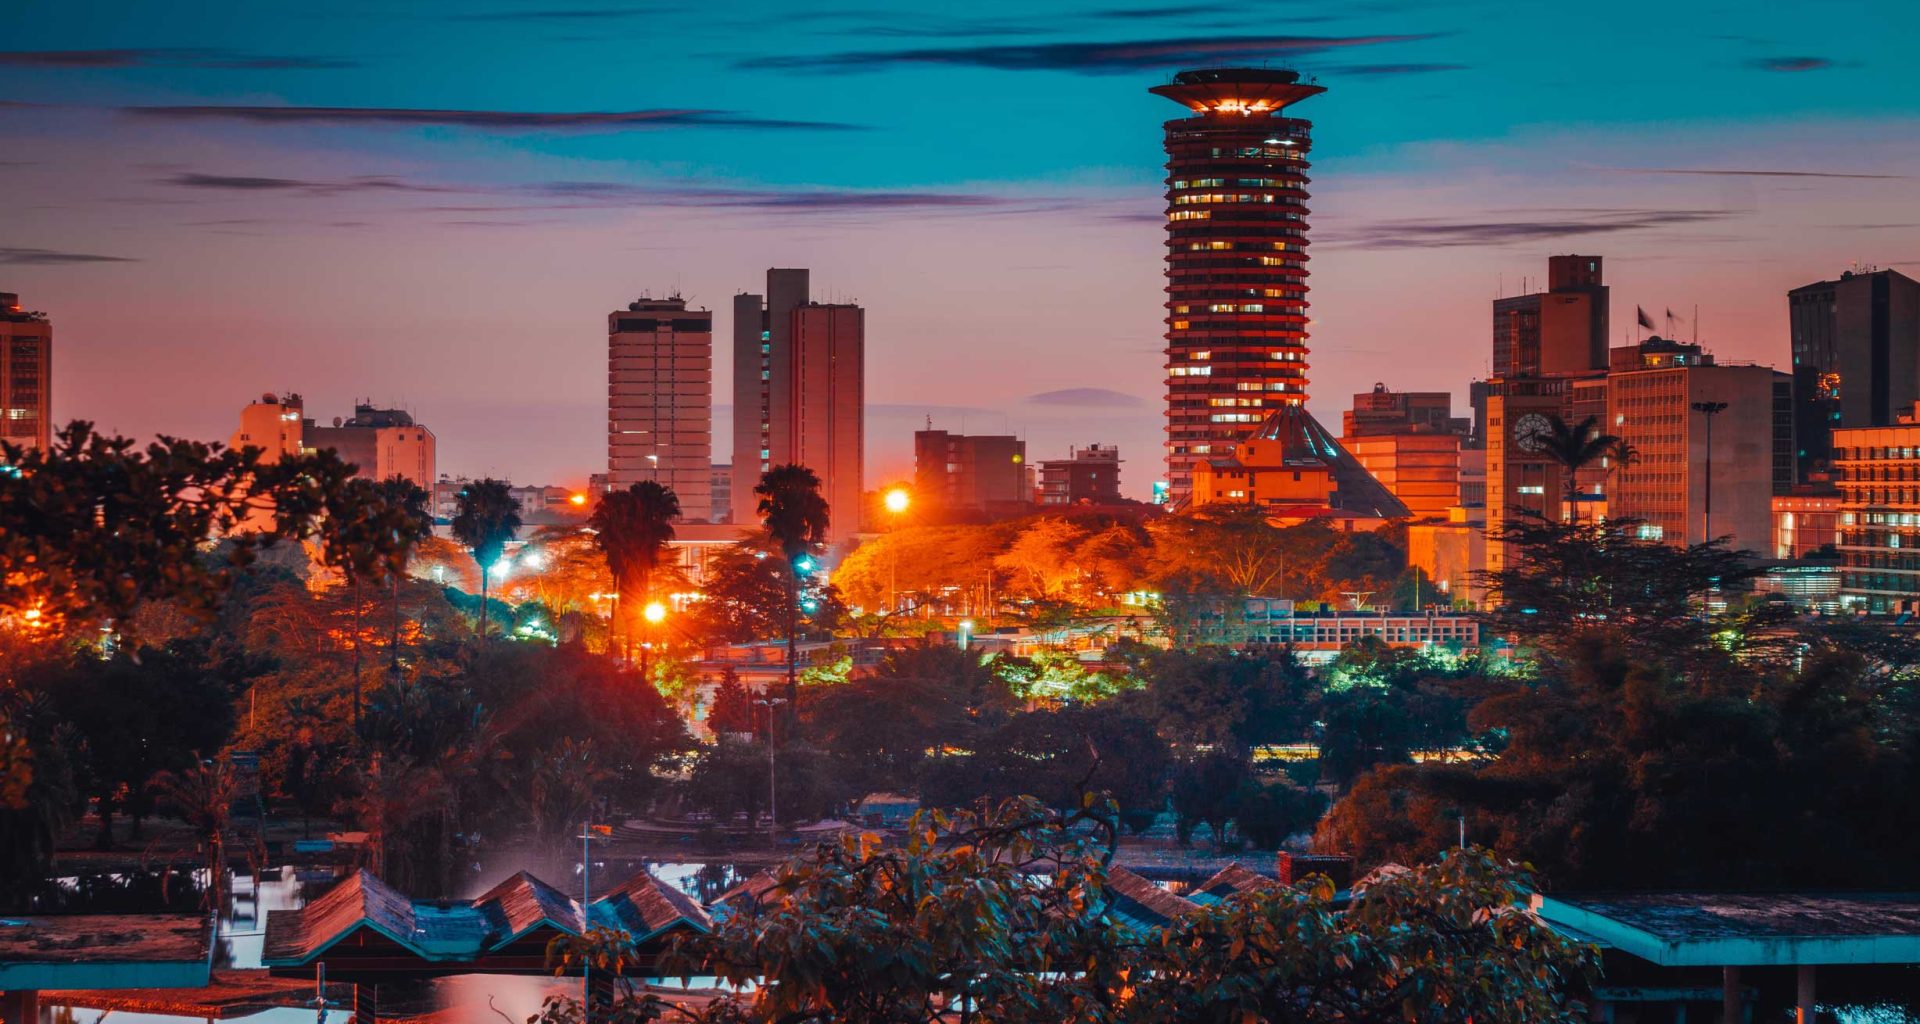 View of Nairobi City from Uhuru park